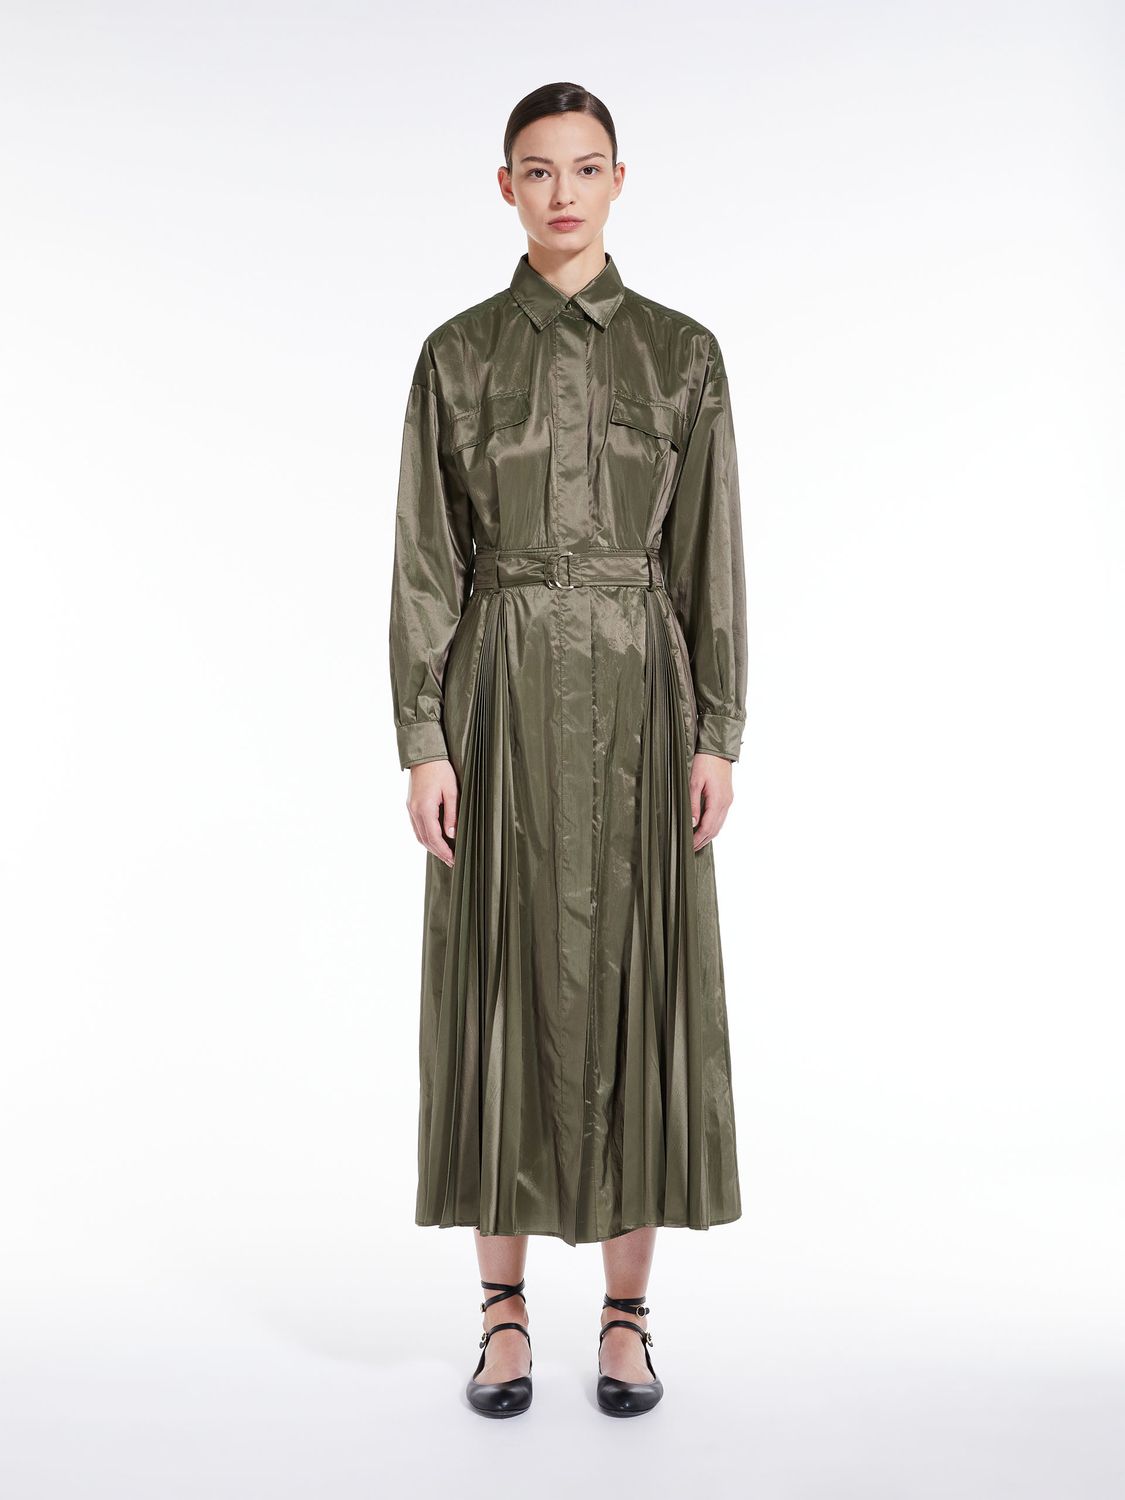 華やかなグリーンドレス － MAX MARAのシルクとポリエステルの贅沢な素材が特徴のFW23コレクションから